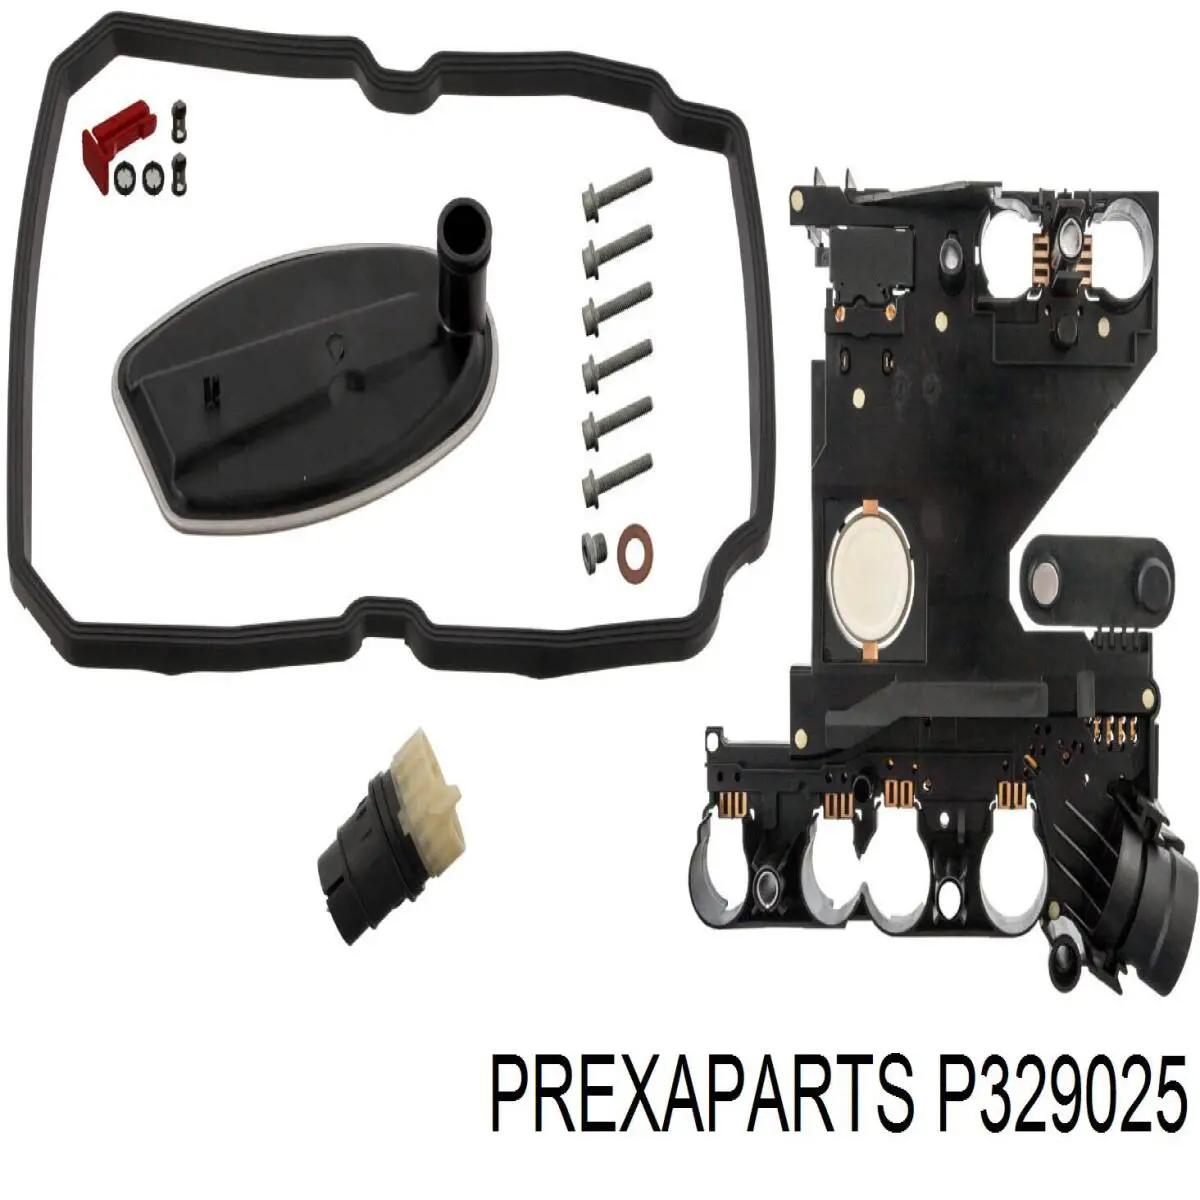 P329025 Prexaparts kit de reparación, caja de cambios automática